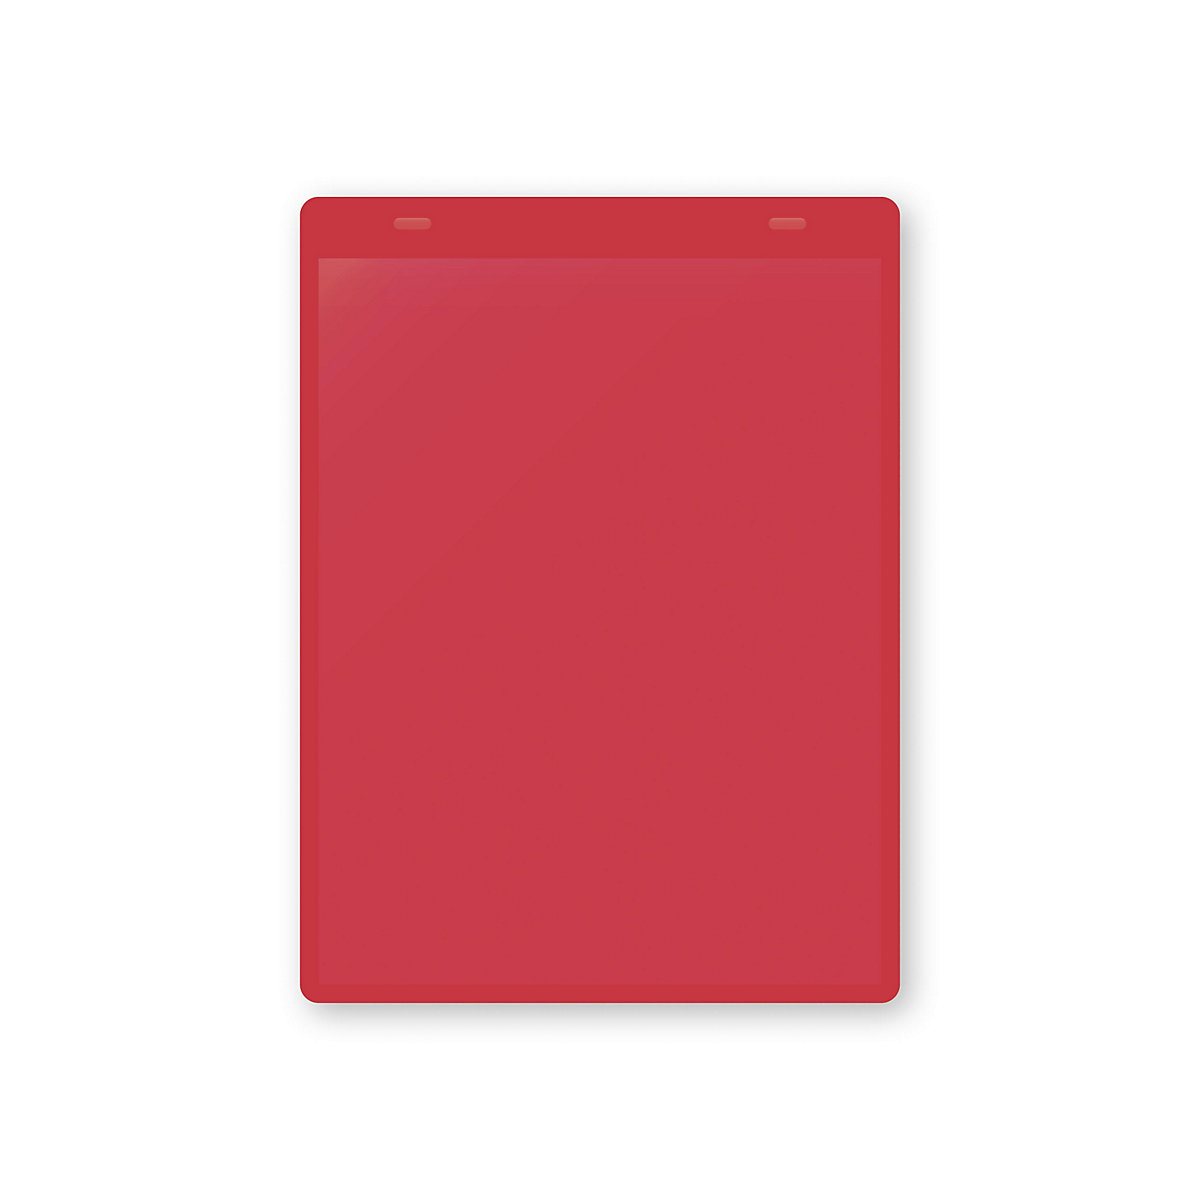 Öntapadó dokumentumtartó tasakok, DIN A5, álló, cs. e. 10 db, piros